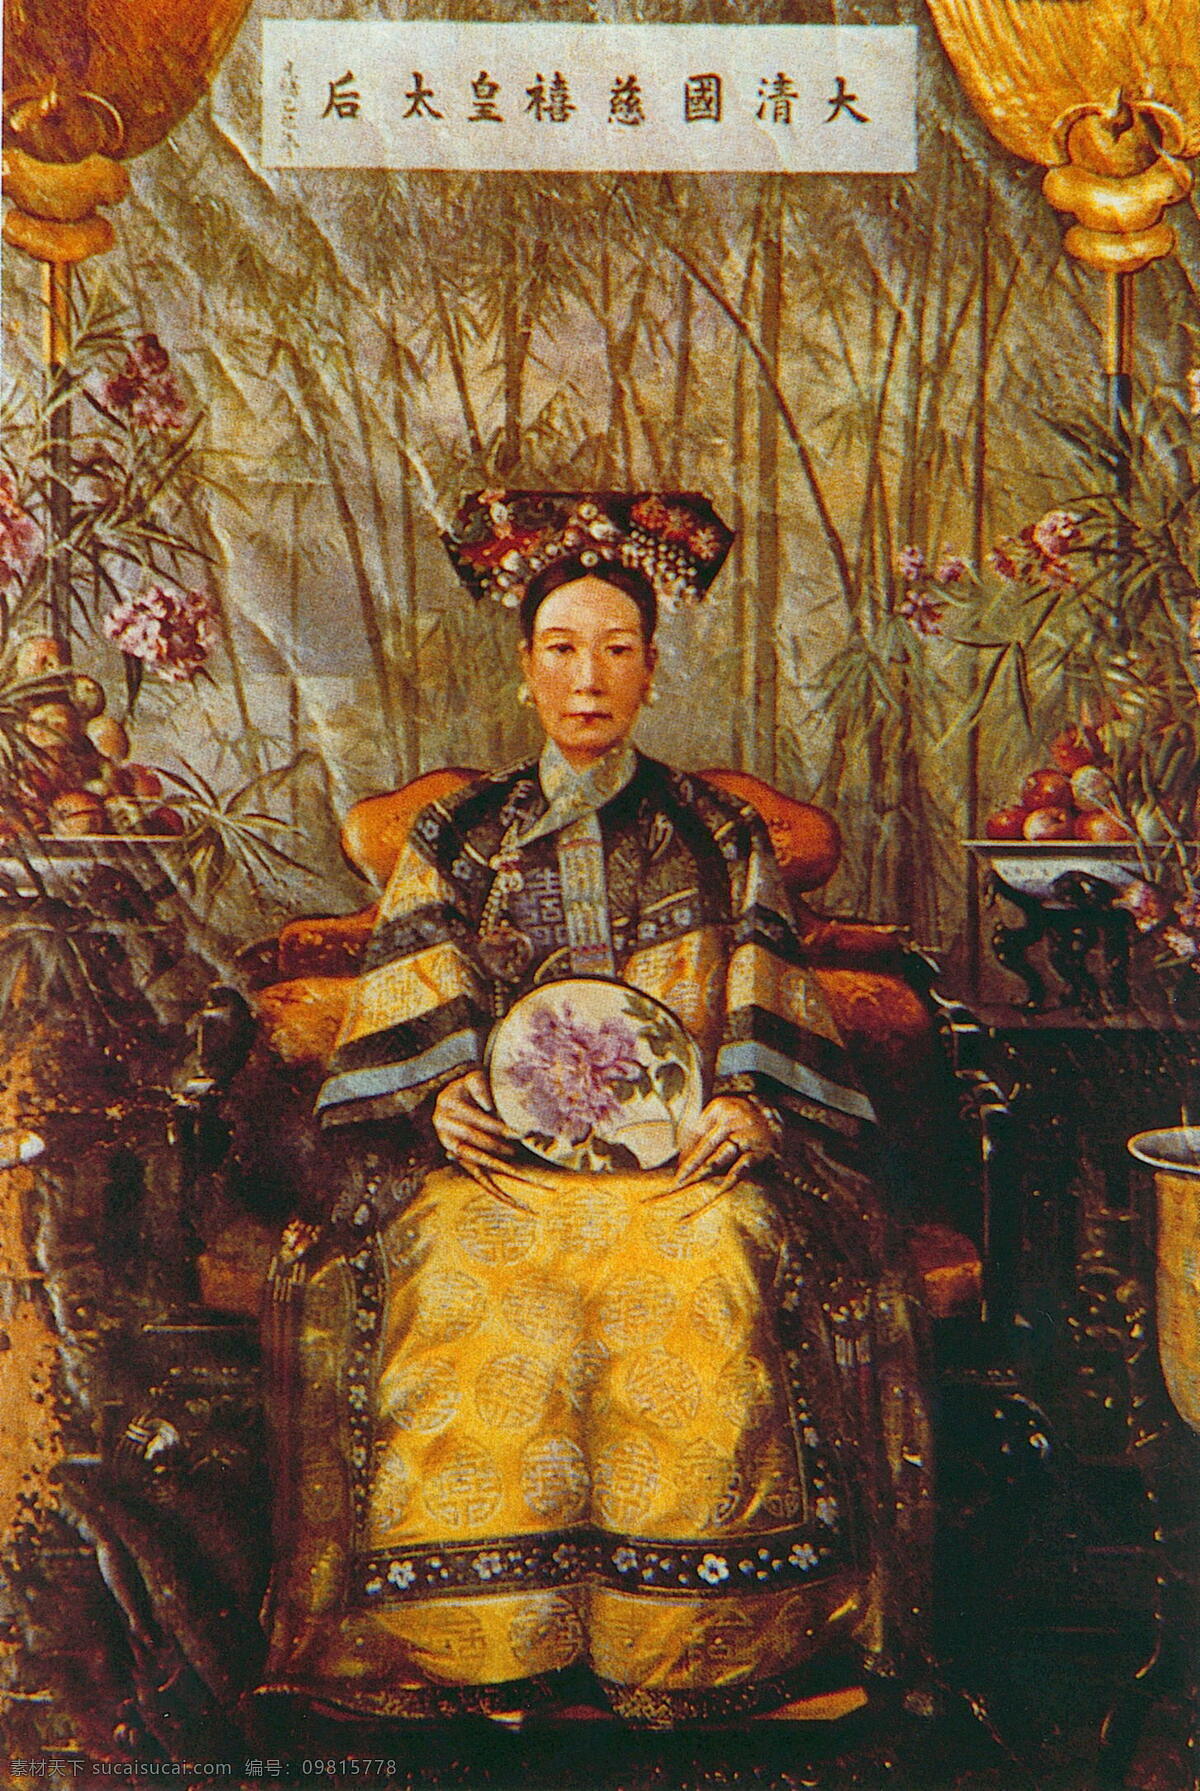 大清 慈禧 皇太后 画像 难得慈禧画像 清晰度高 值得珍藏 文化艺术